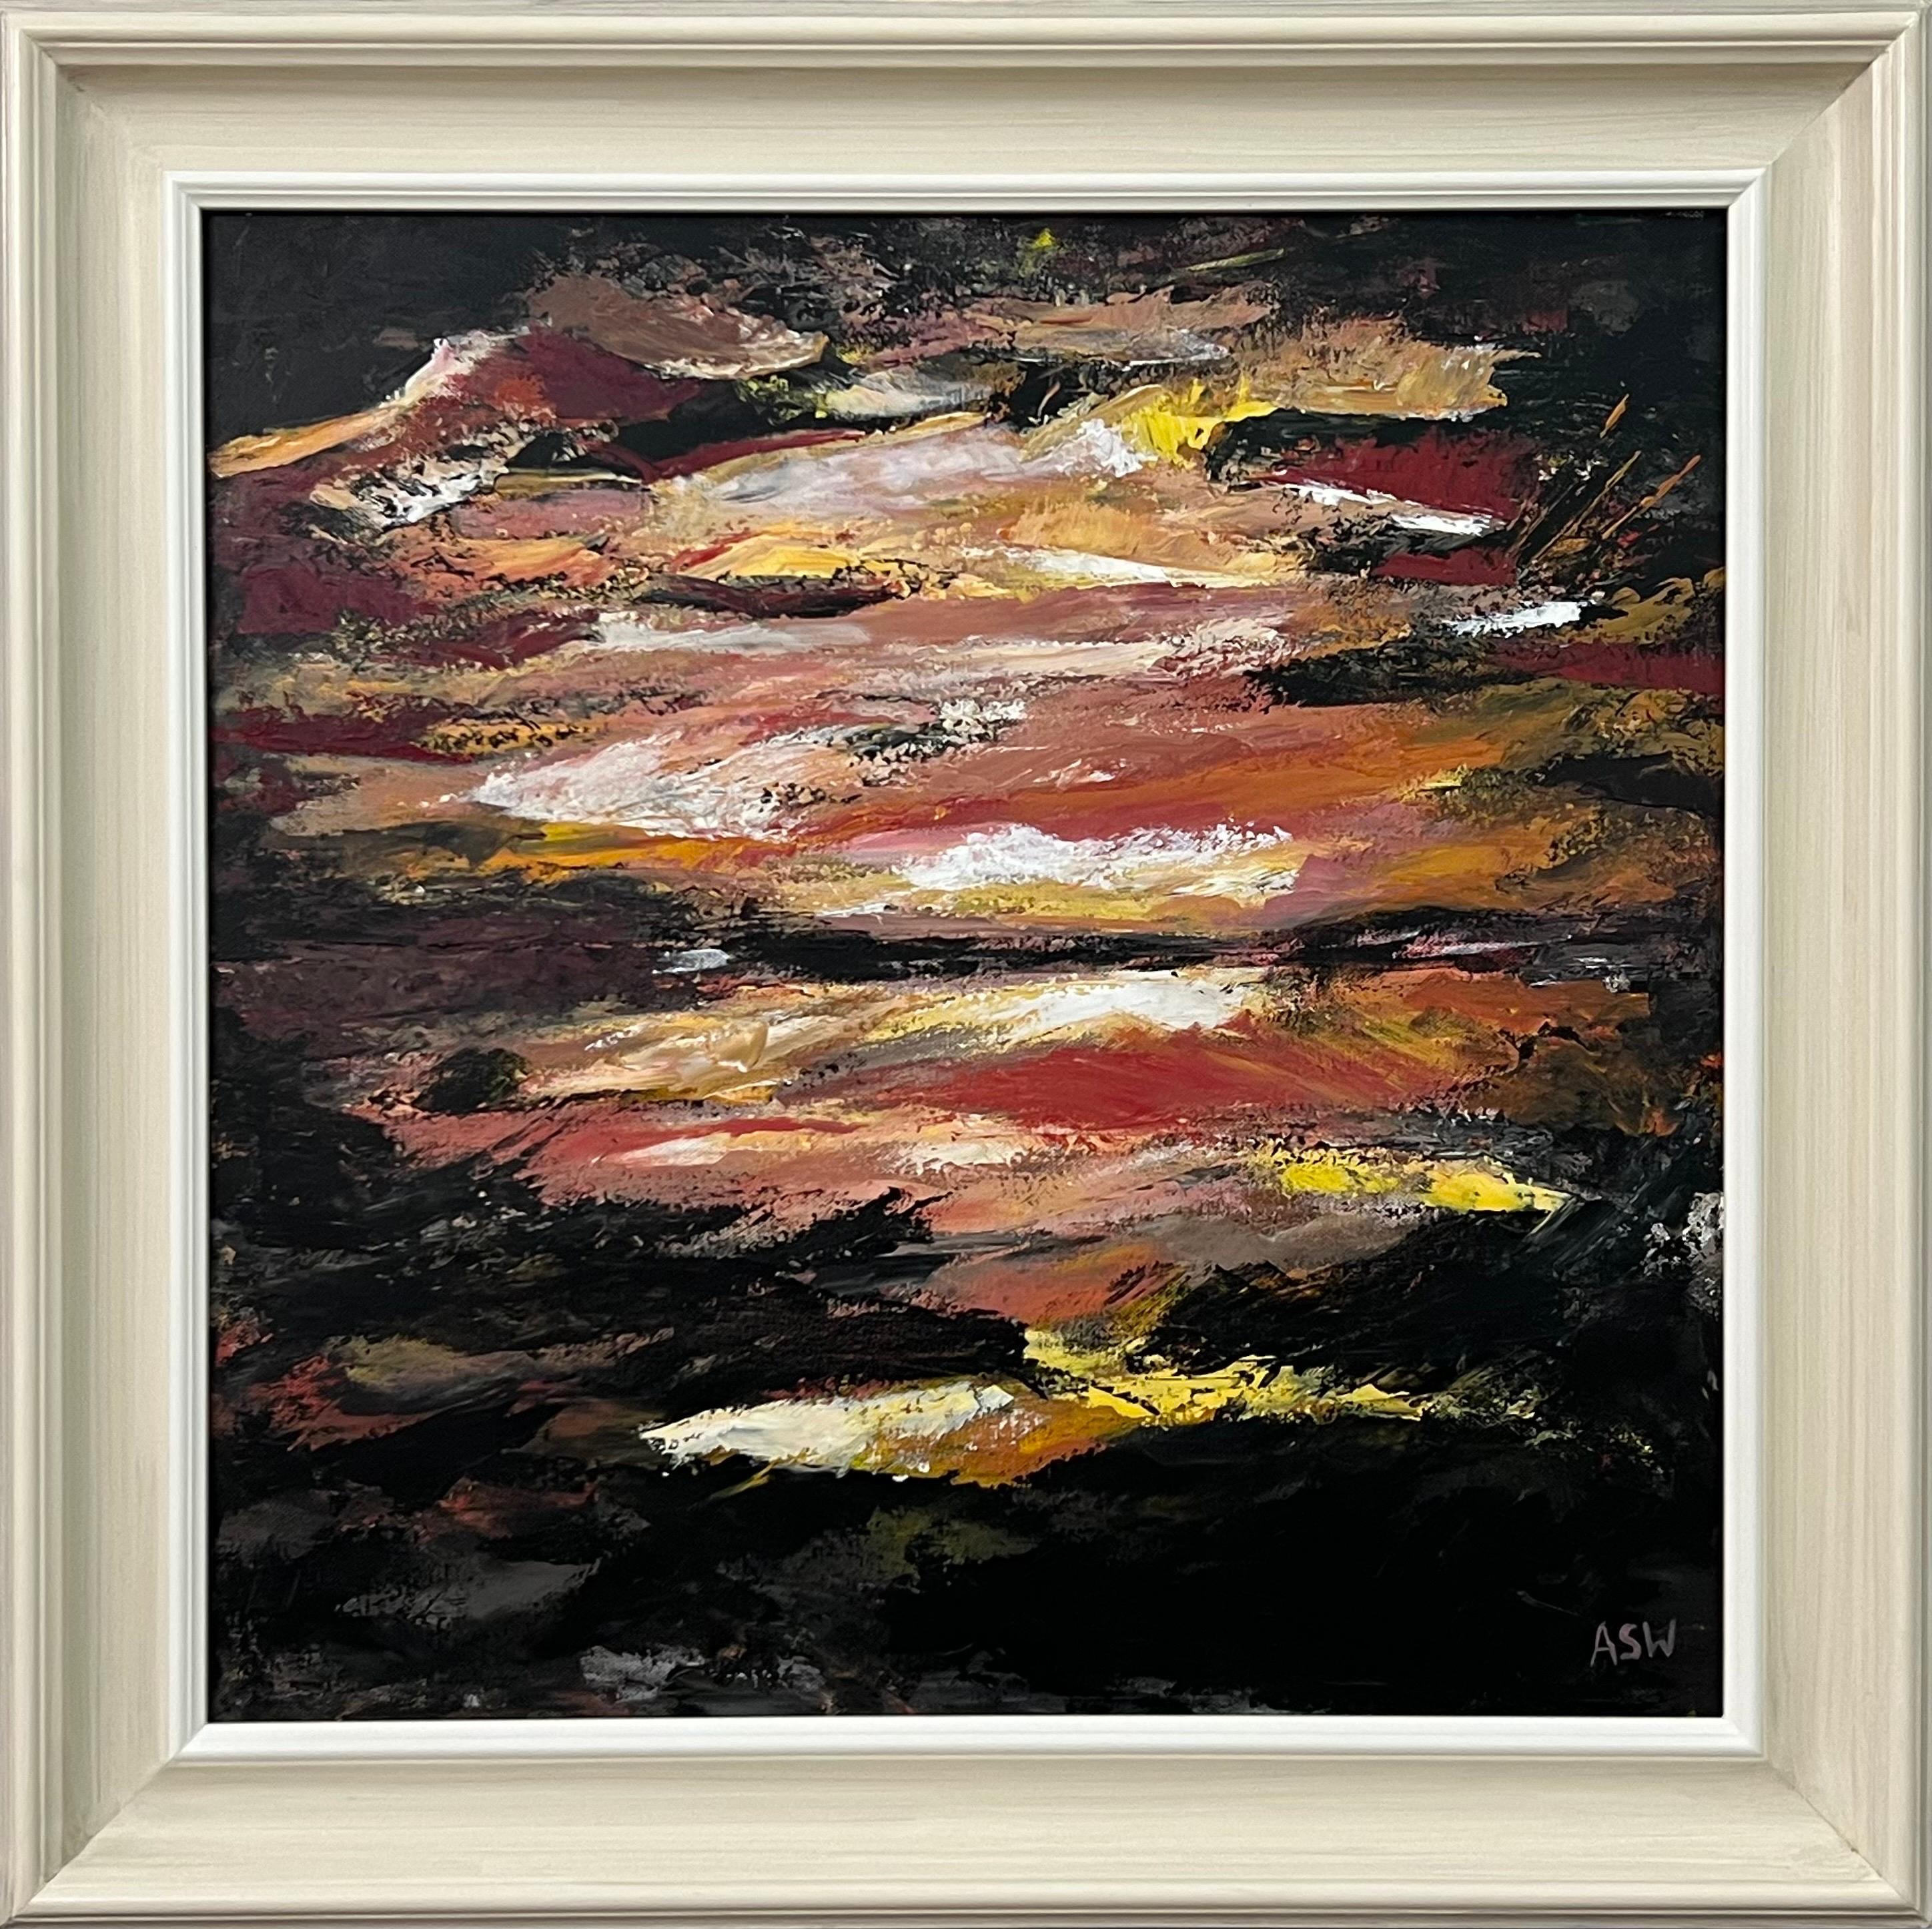 Landscape Painting Angela Wakefield - Paysage abstrait impressionniste foncé d'un artiste britannique contemporain